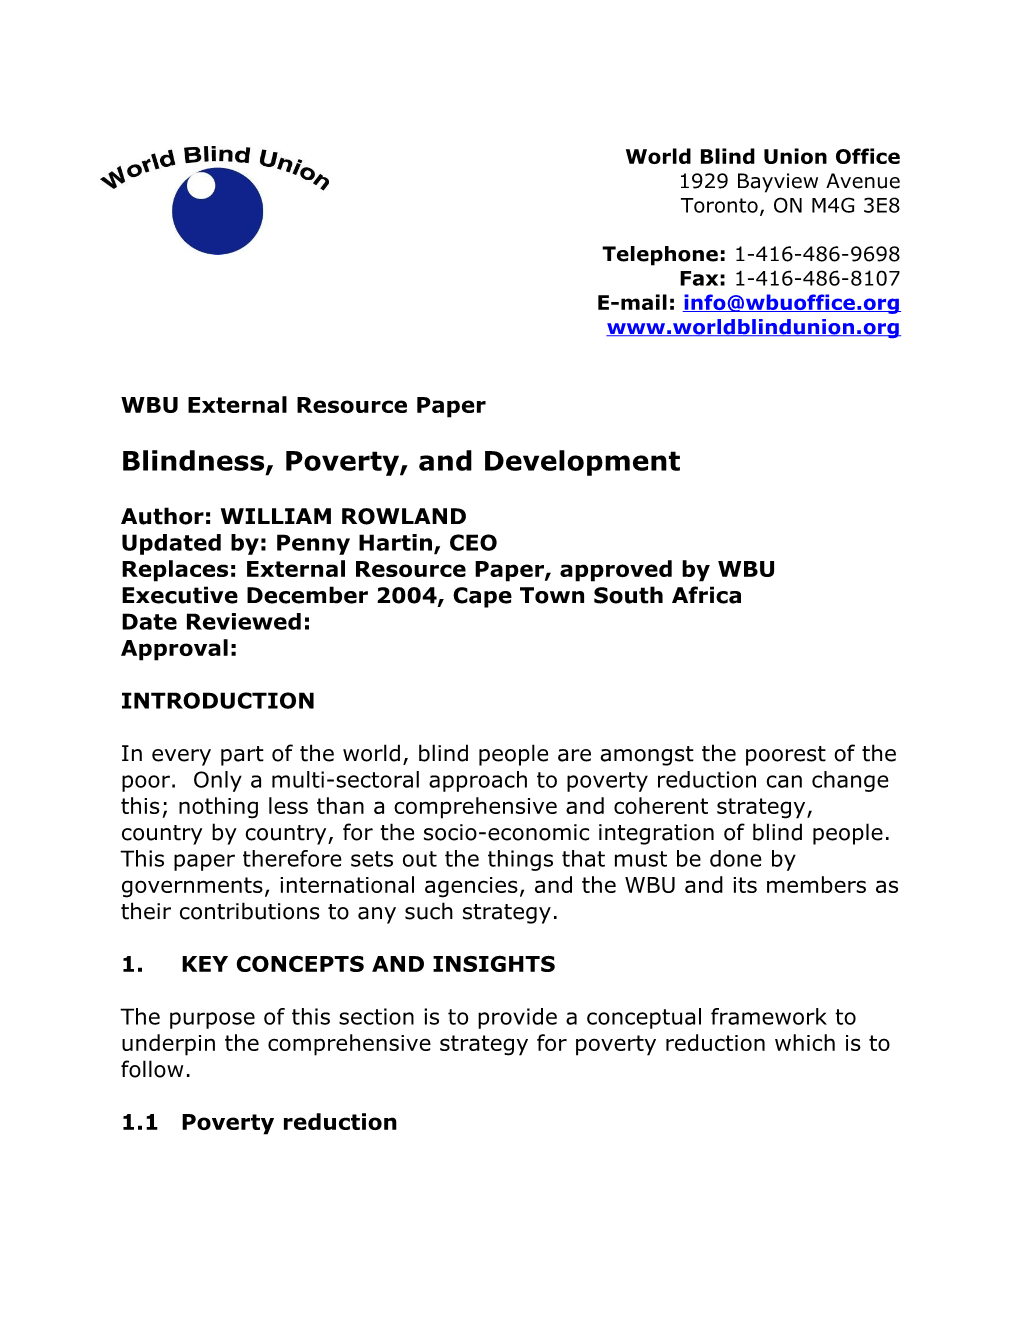 WBU External Resource Paper